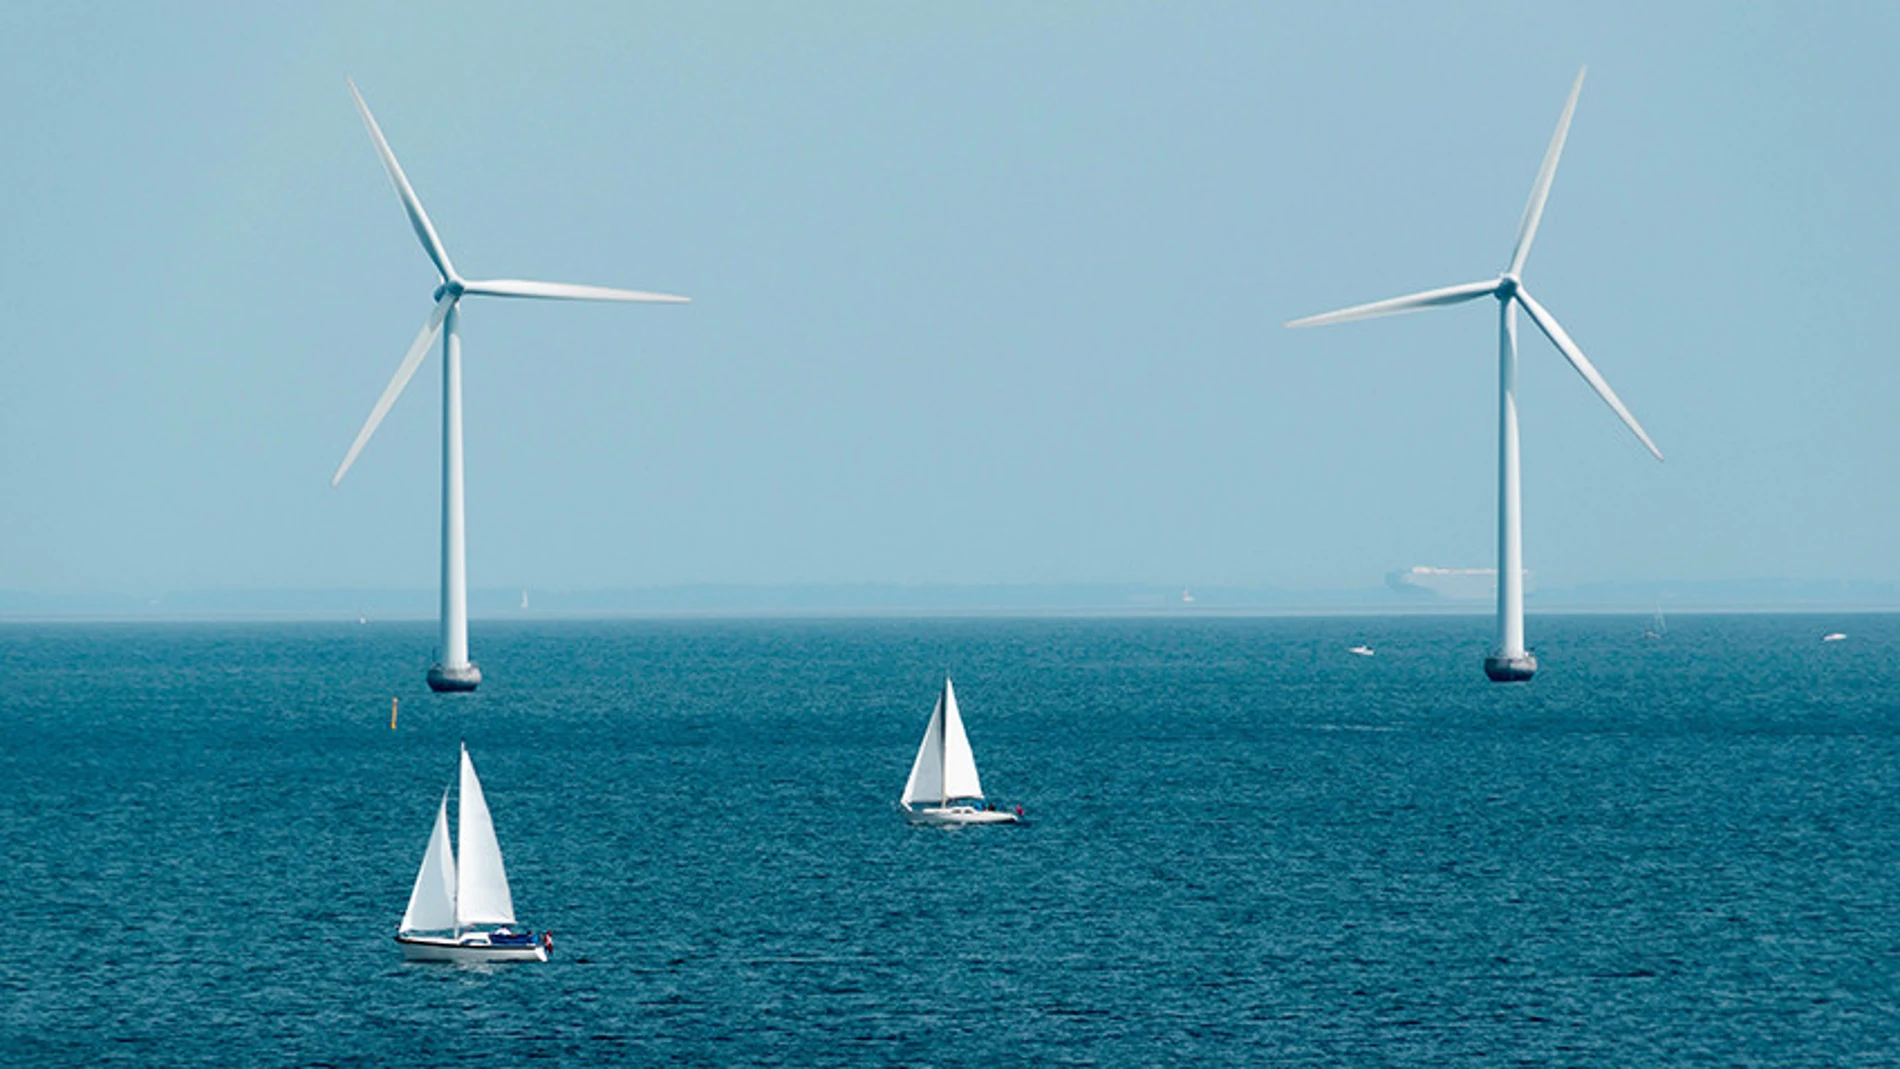 Iberdrola suministrará energía para más de 800.000 hogares desde el parque eólico marino que levantará en Francia desde 2021